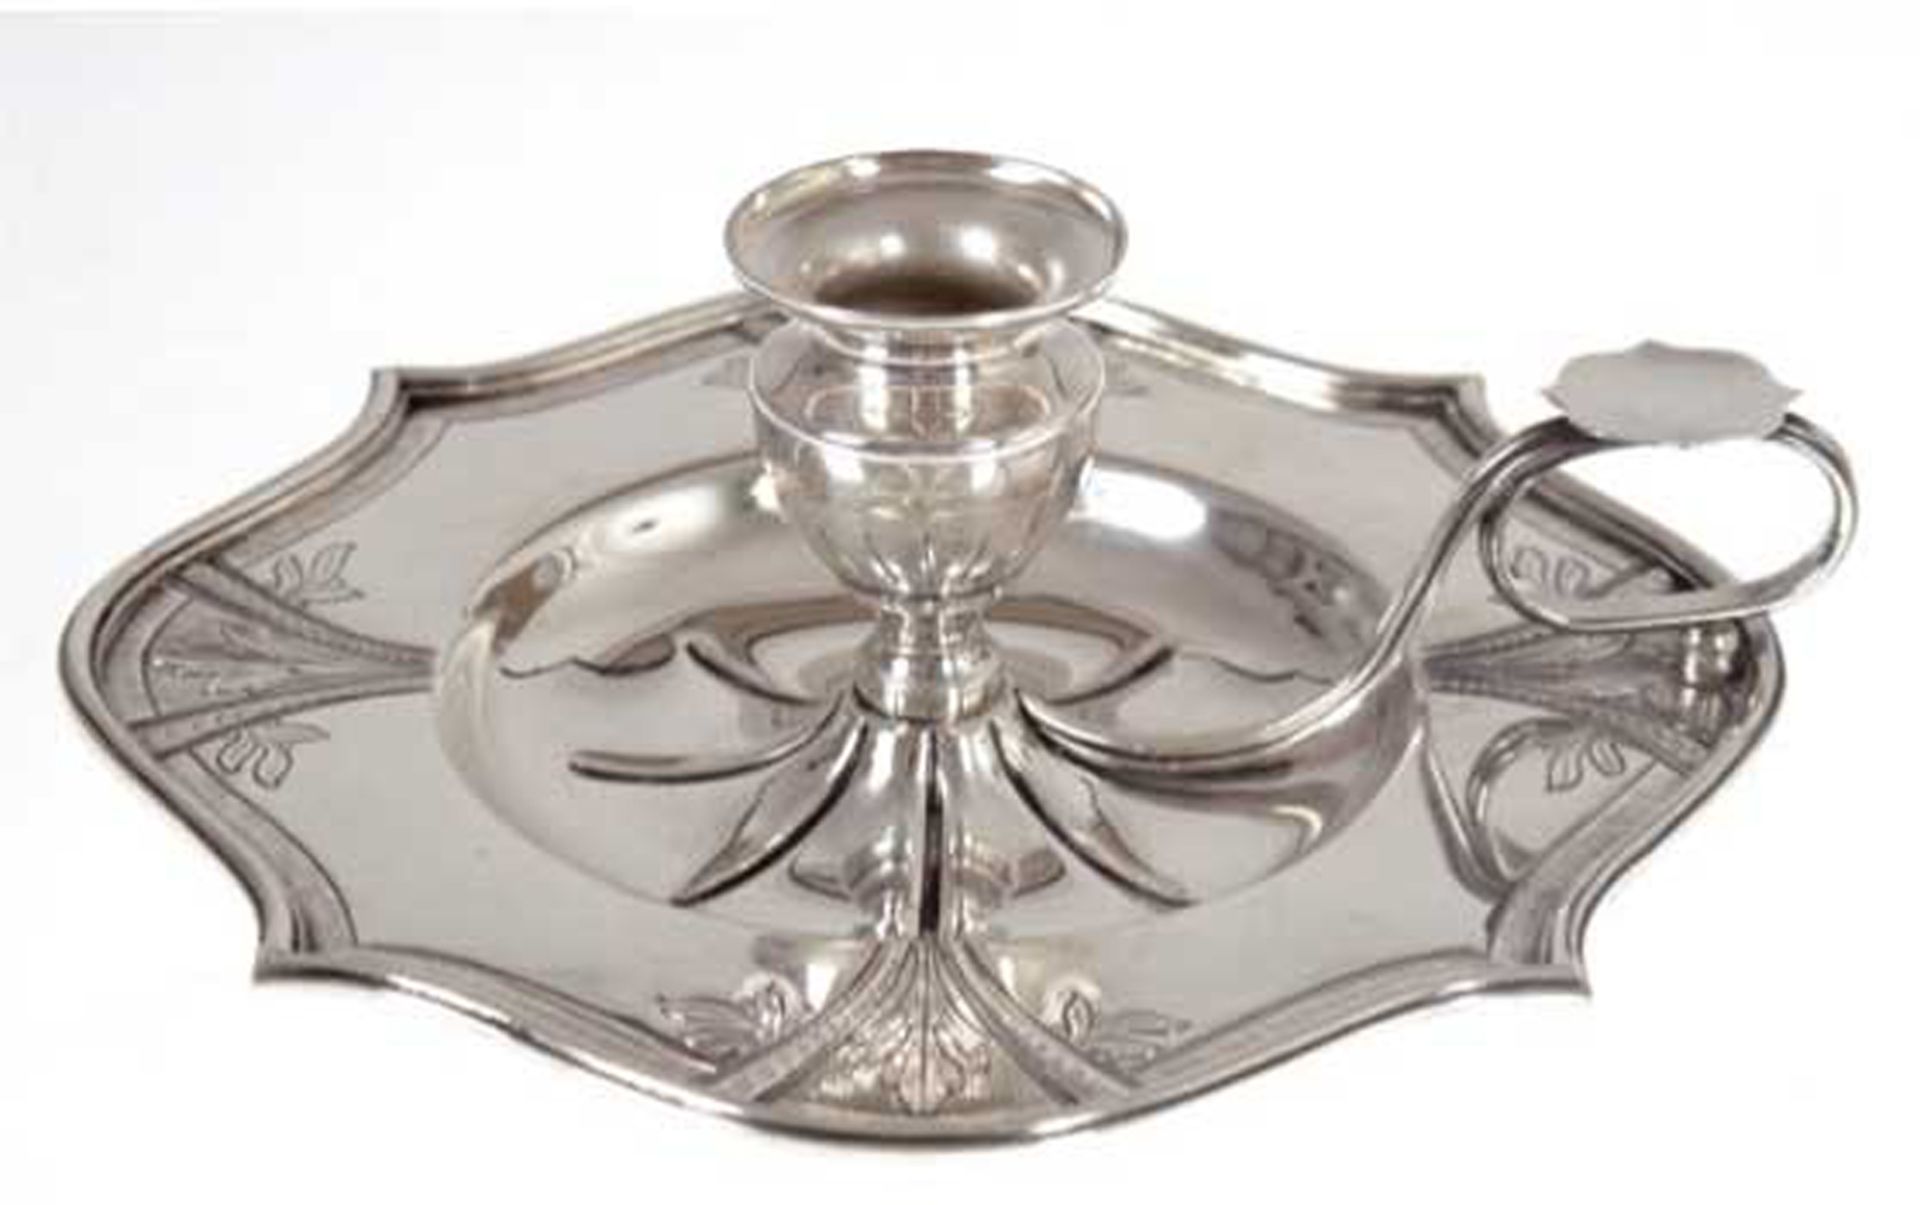 Tellerleuchter, 925er Silber, punziert, ca. 322 g, Teller mit floral ziselierter, geschweifter Fahn